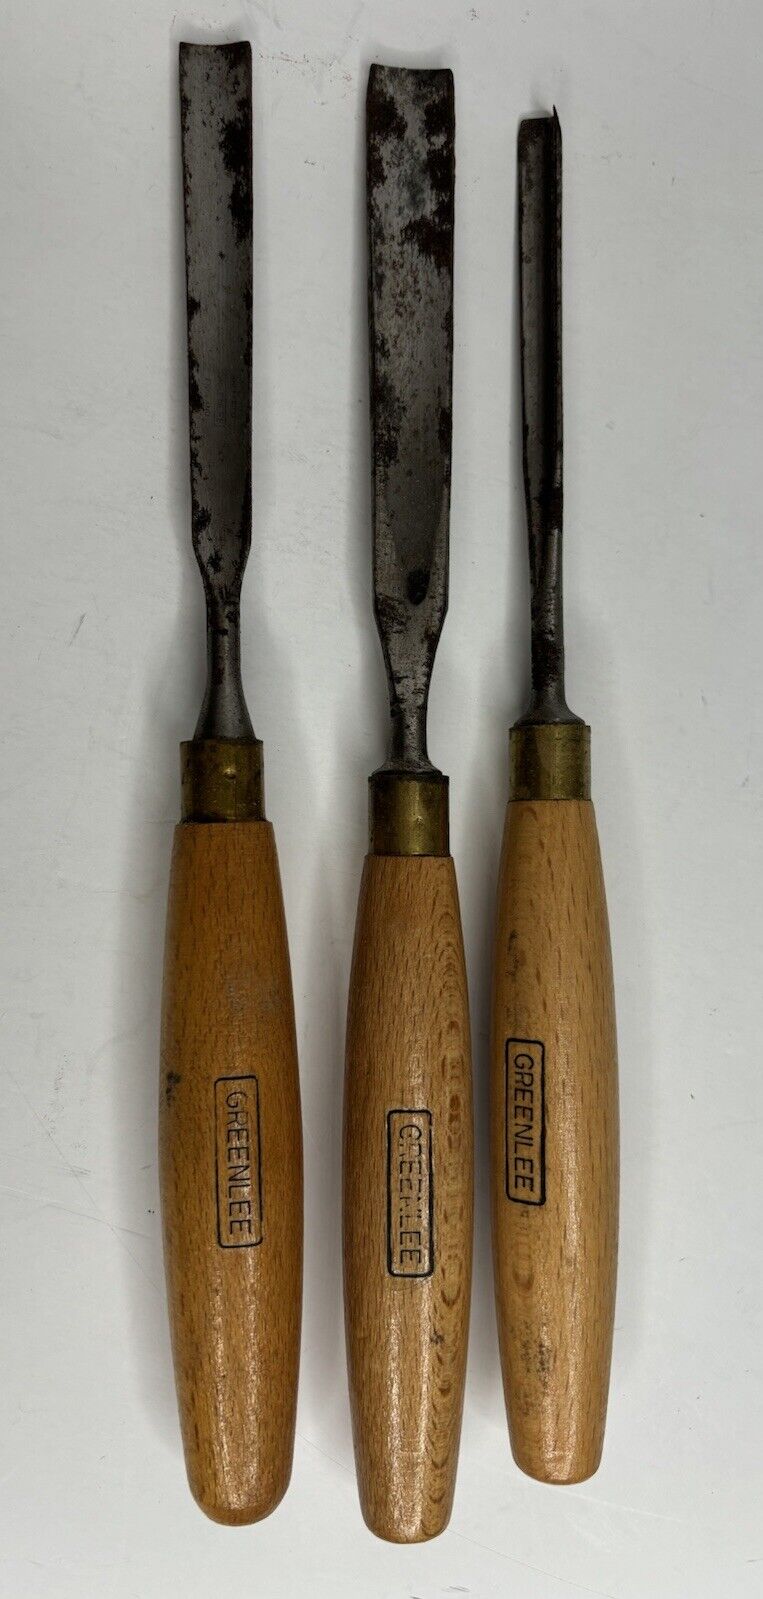 3 Vintage Greenlee Wood Carving Chisels Wood Working Tools